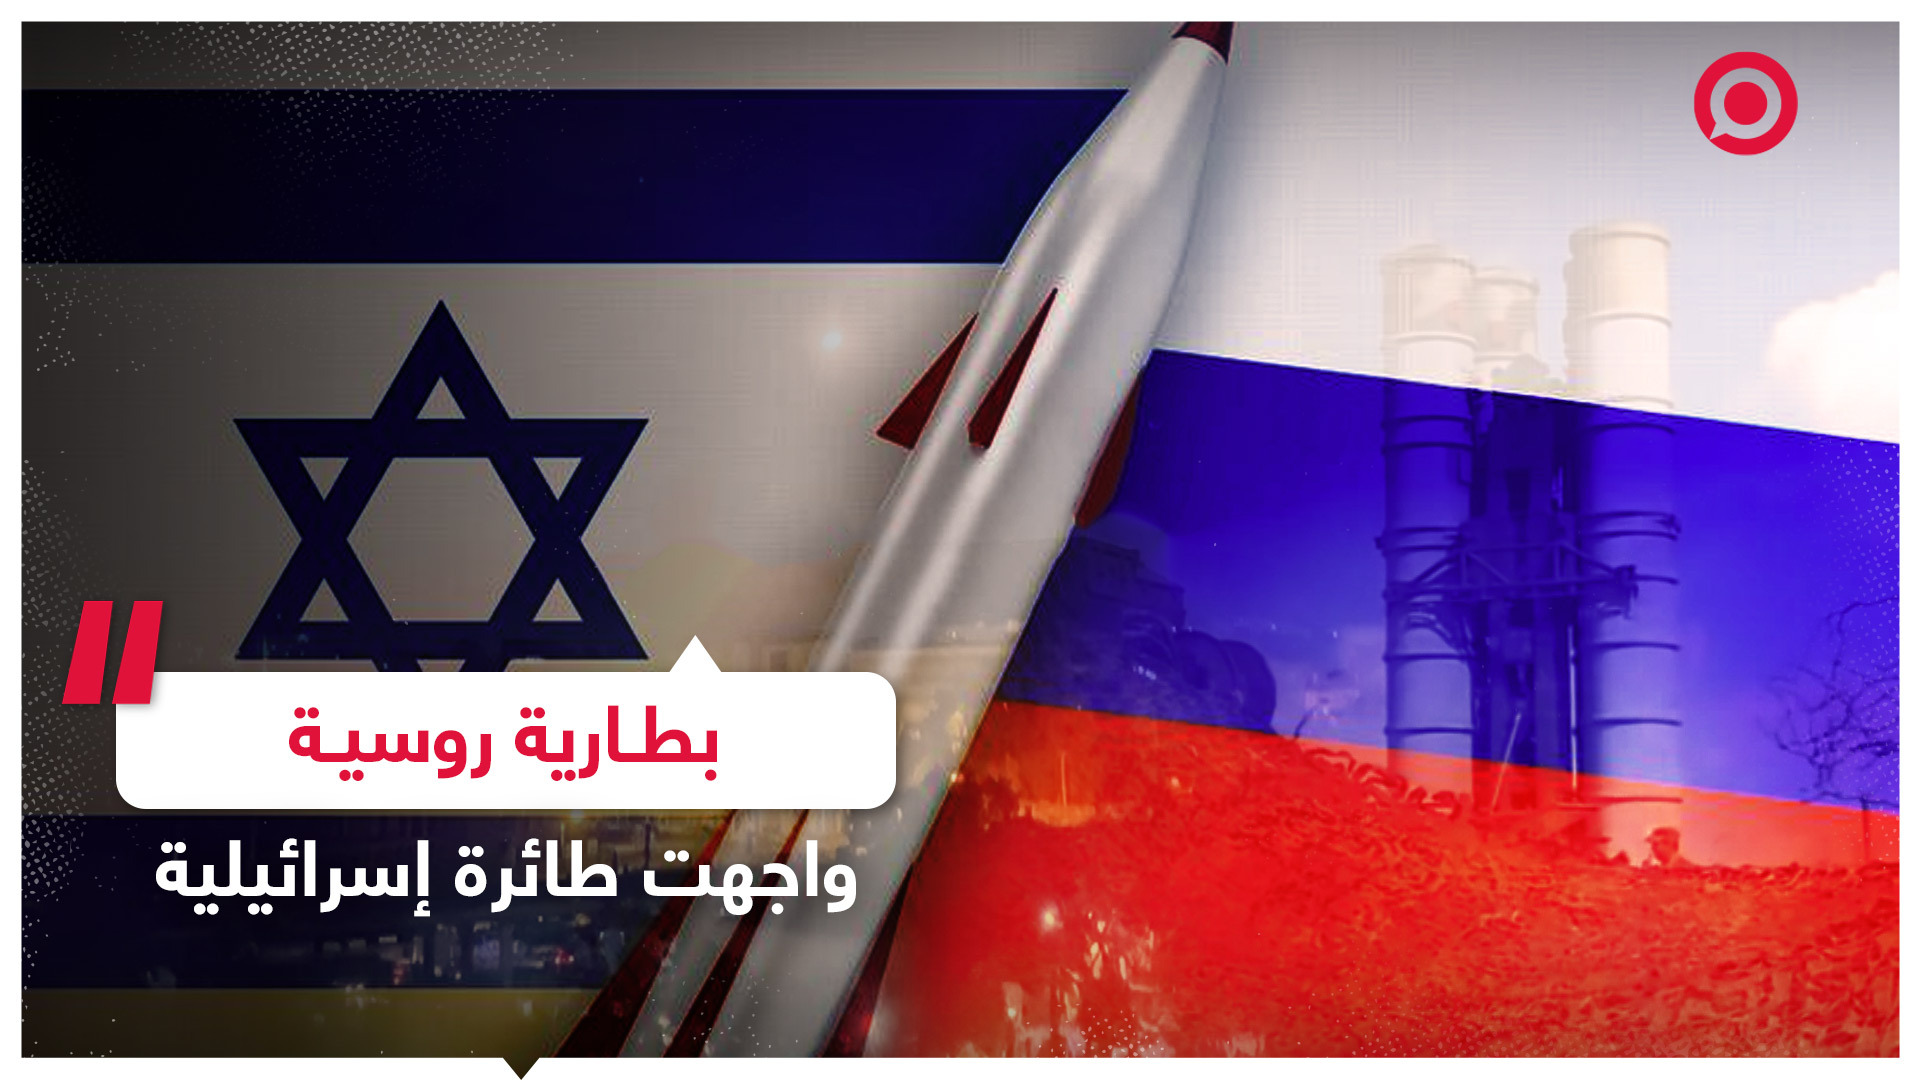 صاروخ روسي يلاحق طائرة إسرائيلية فوق سوريا